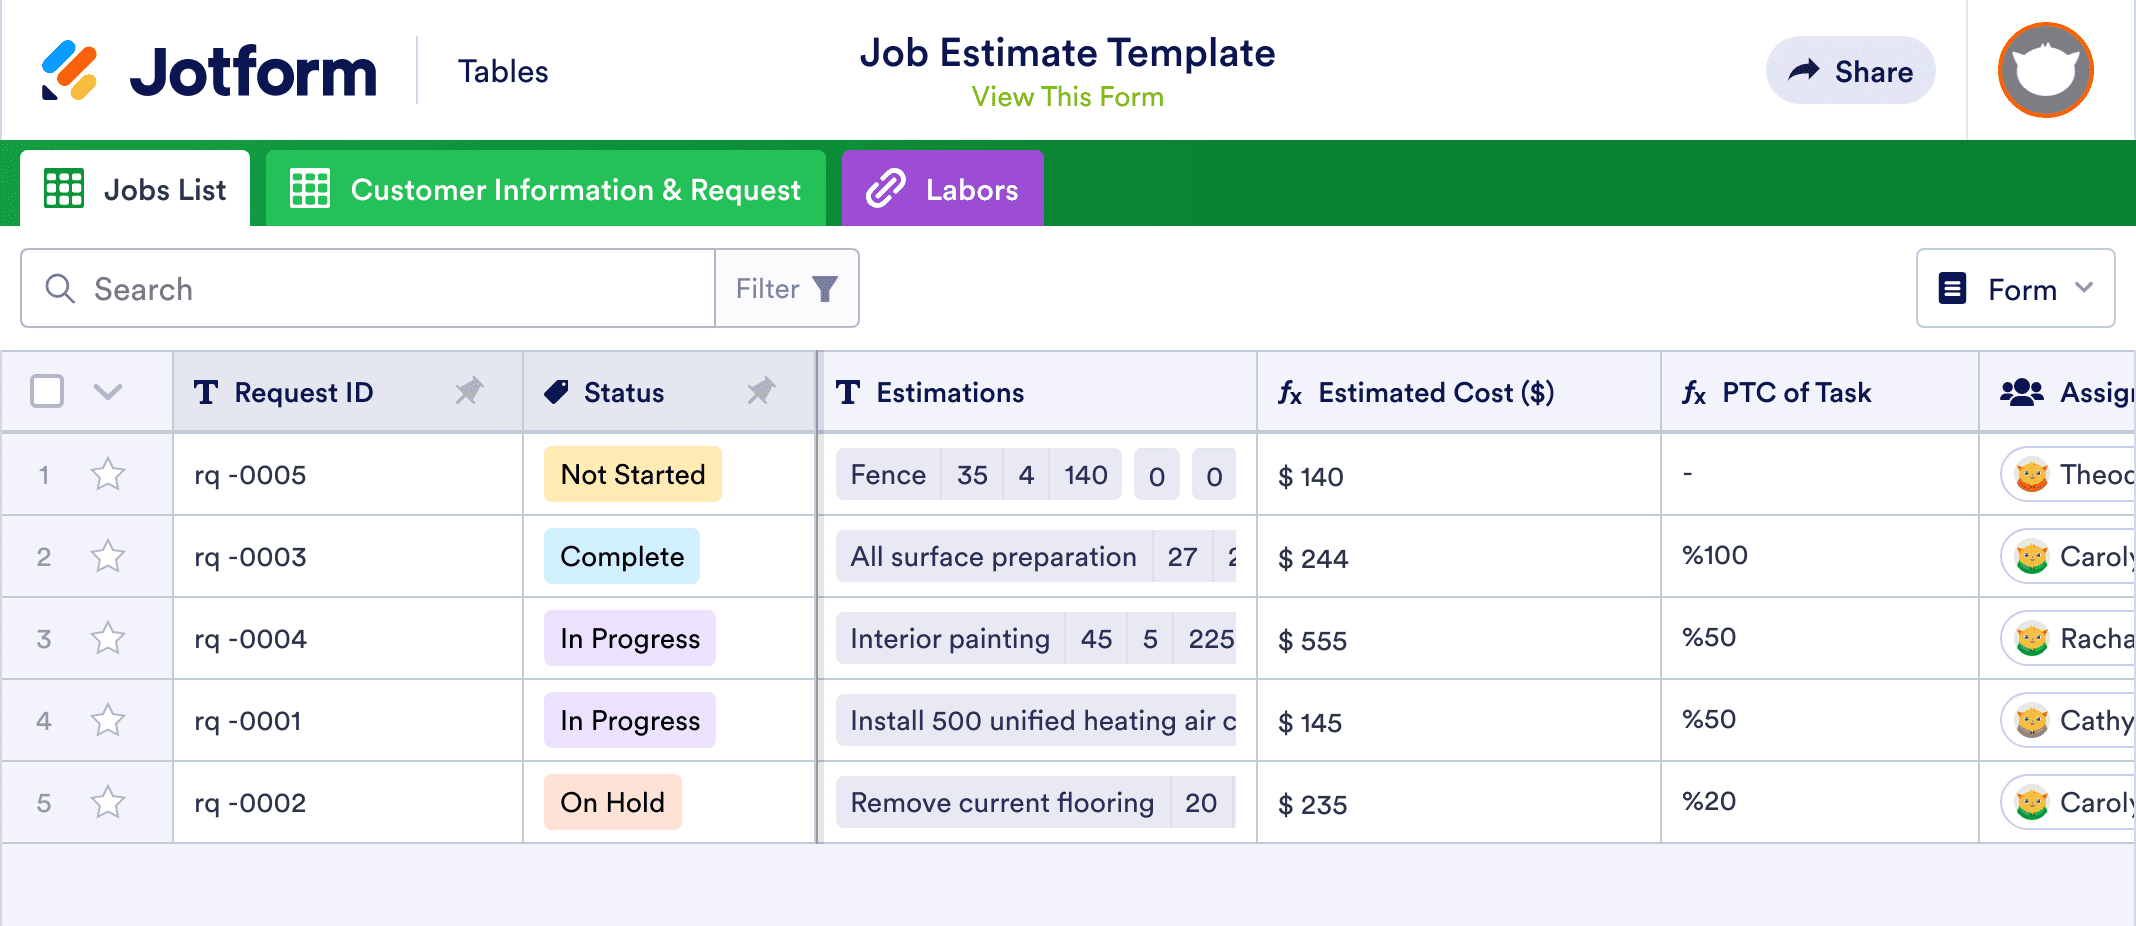 Job Estimate Template